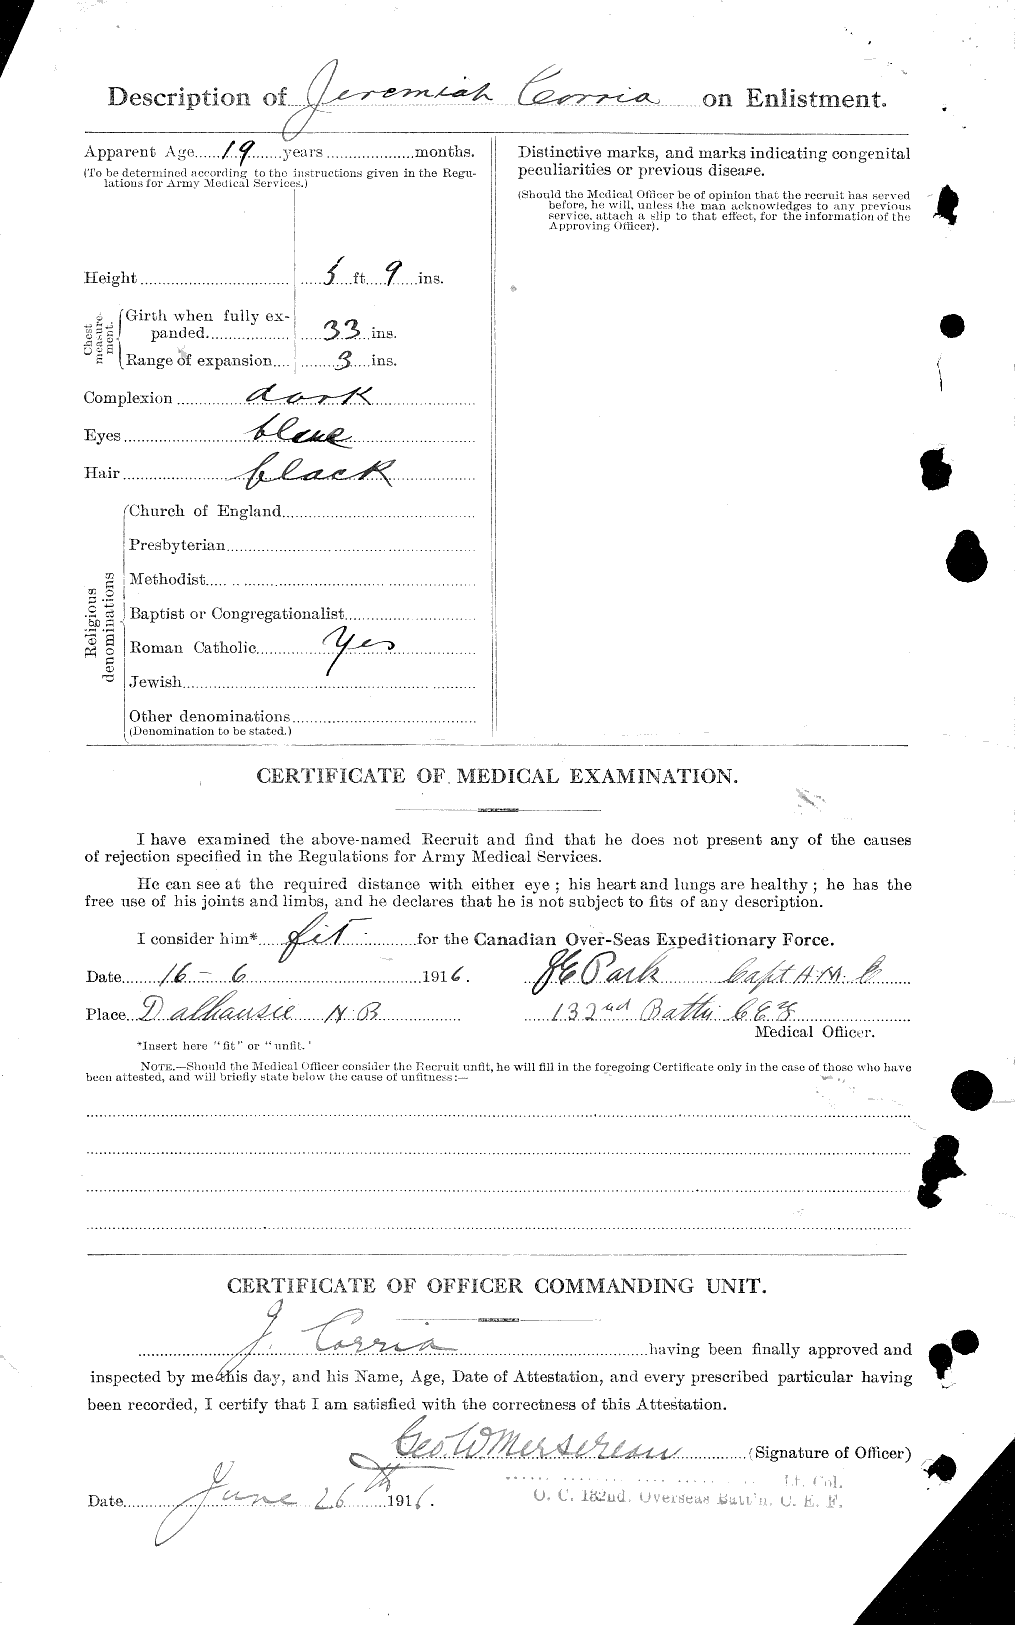 Dossiers du Personnel de la Première Guerre mondiale - CEC 010560b